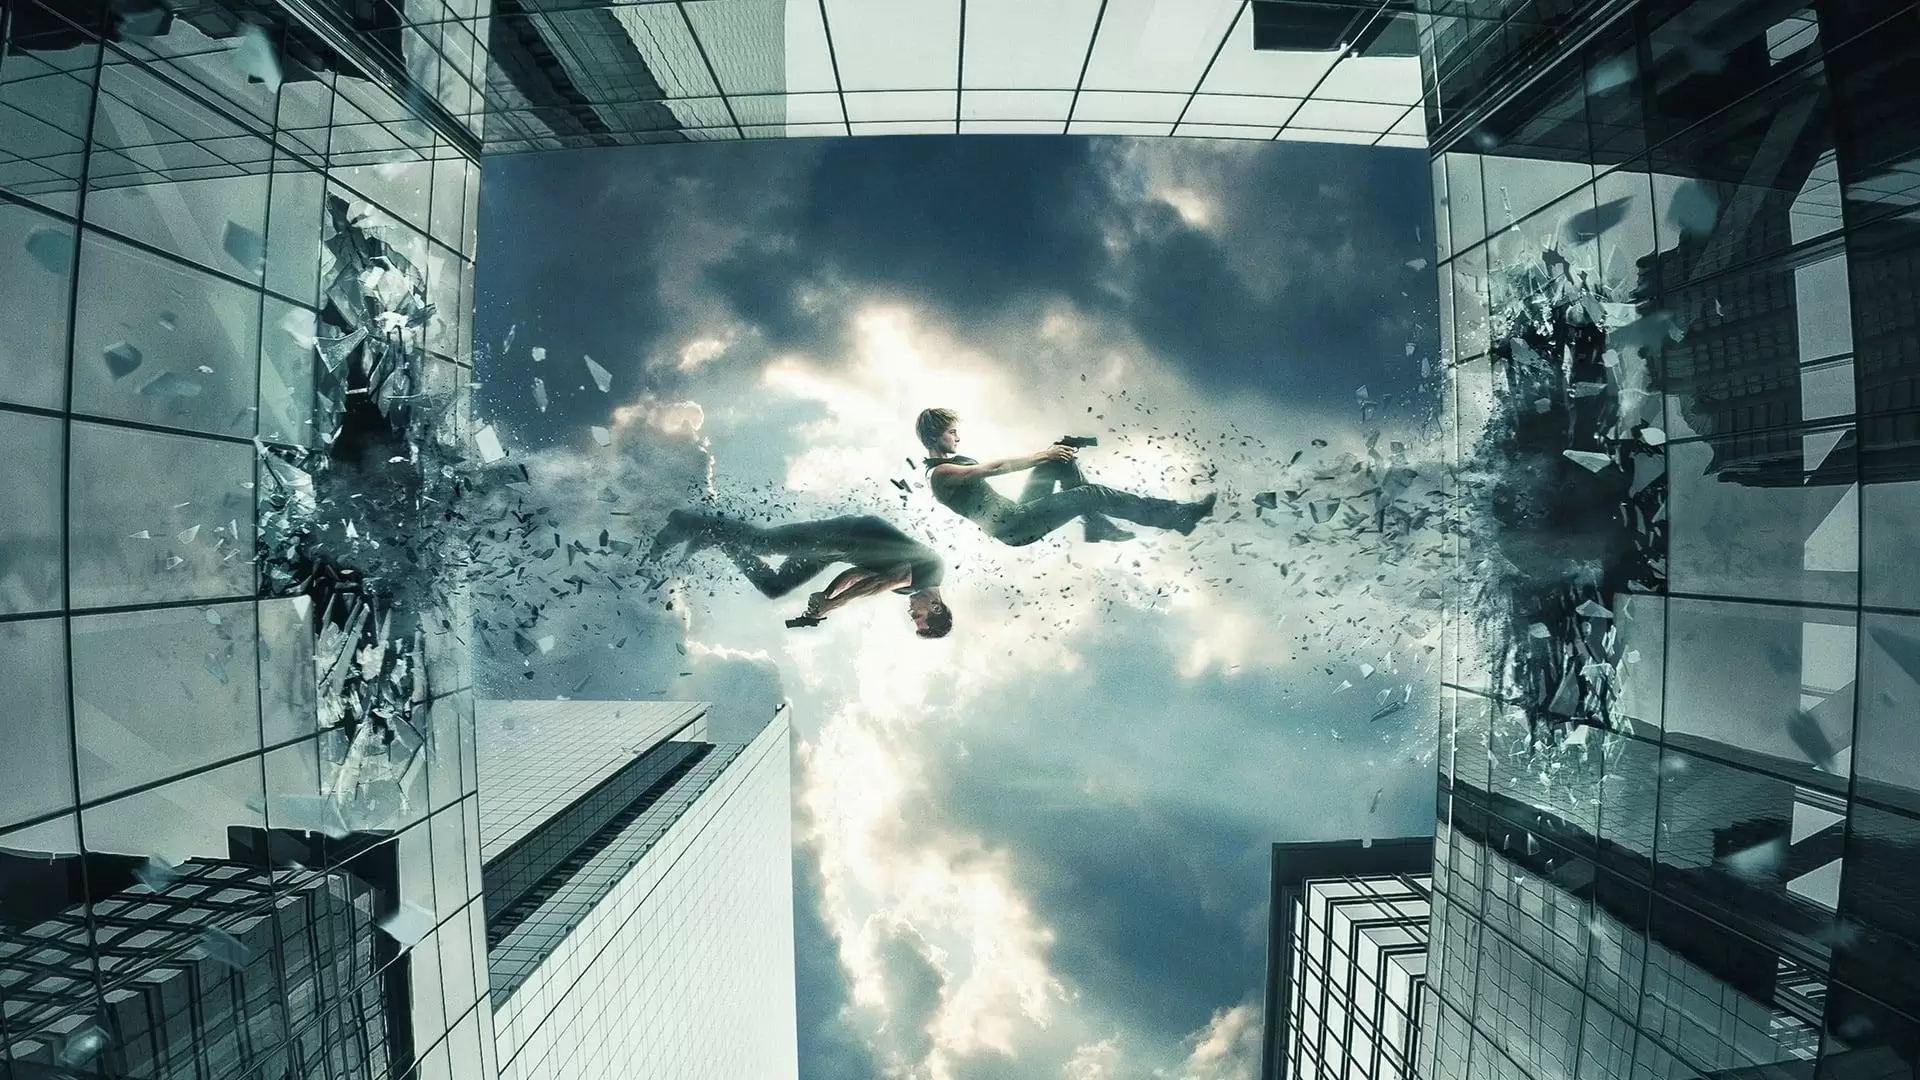 دانلود فیلم The Divergent Series: Insurgent 2015 (مجموعه سنت‌شکن: شورشی) با زیرنویس فارسی و تماشای آنلاین